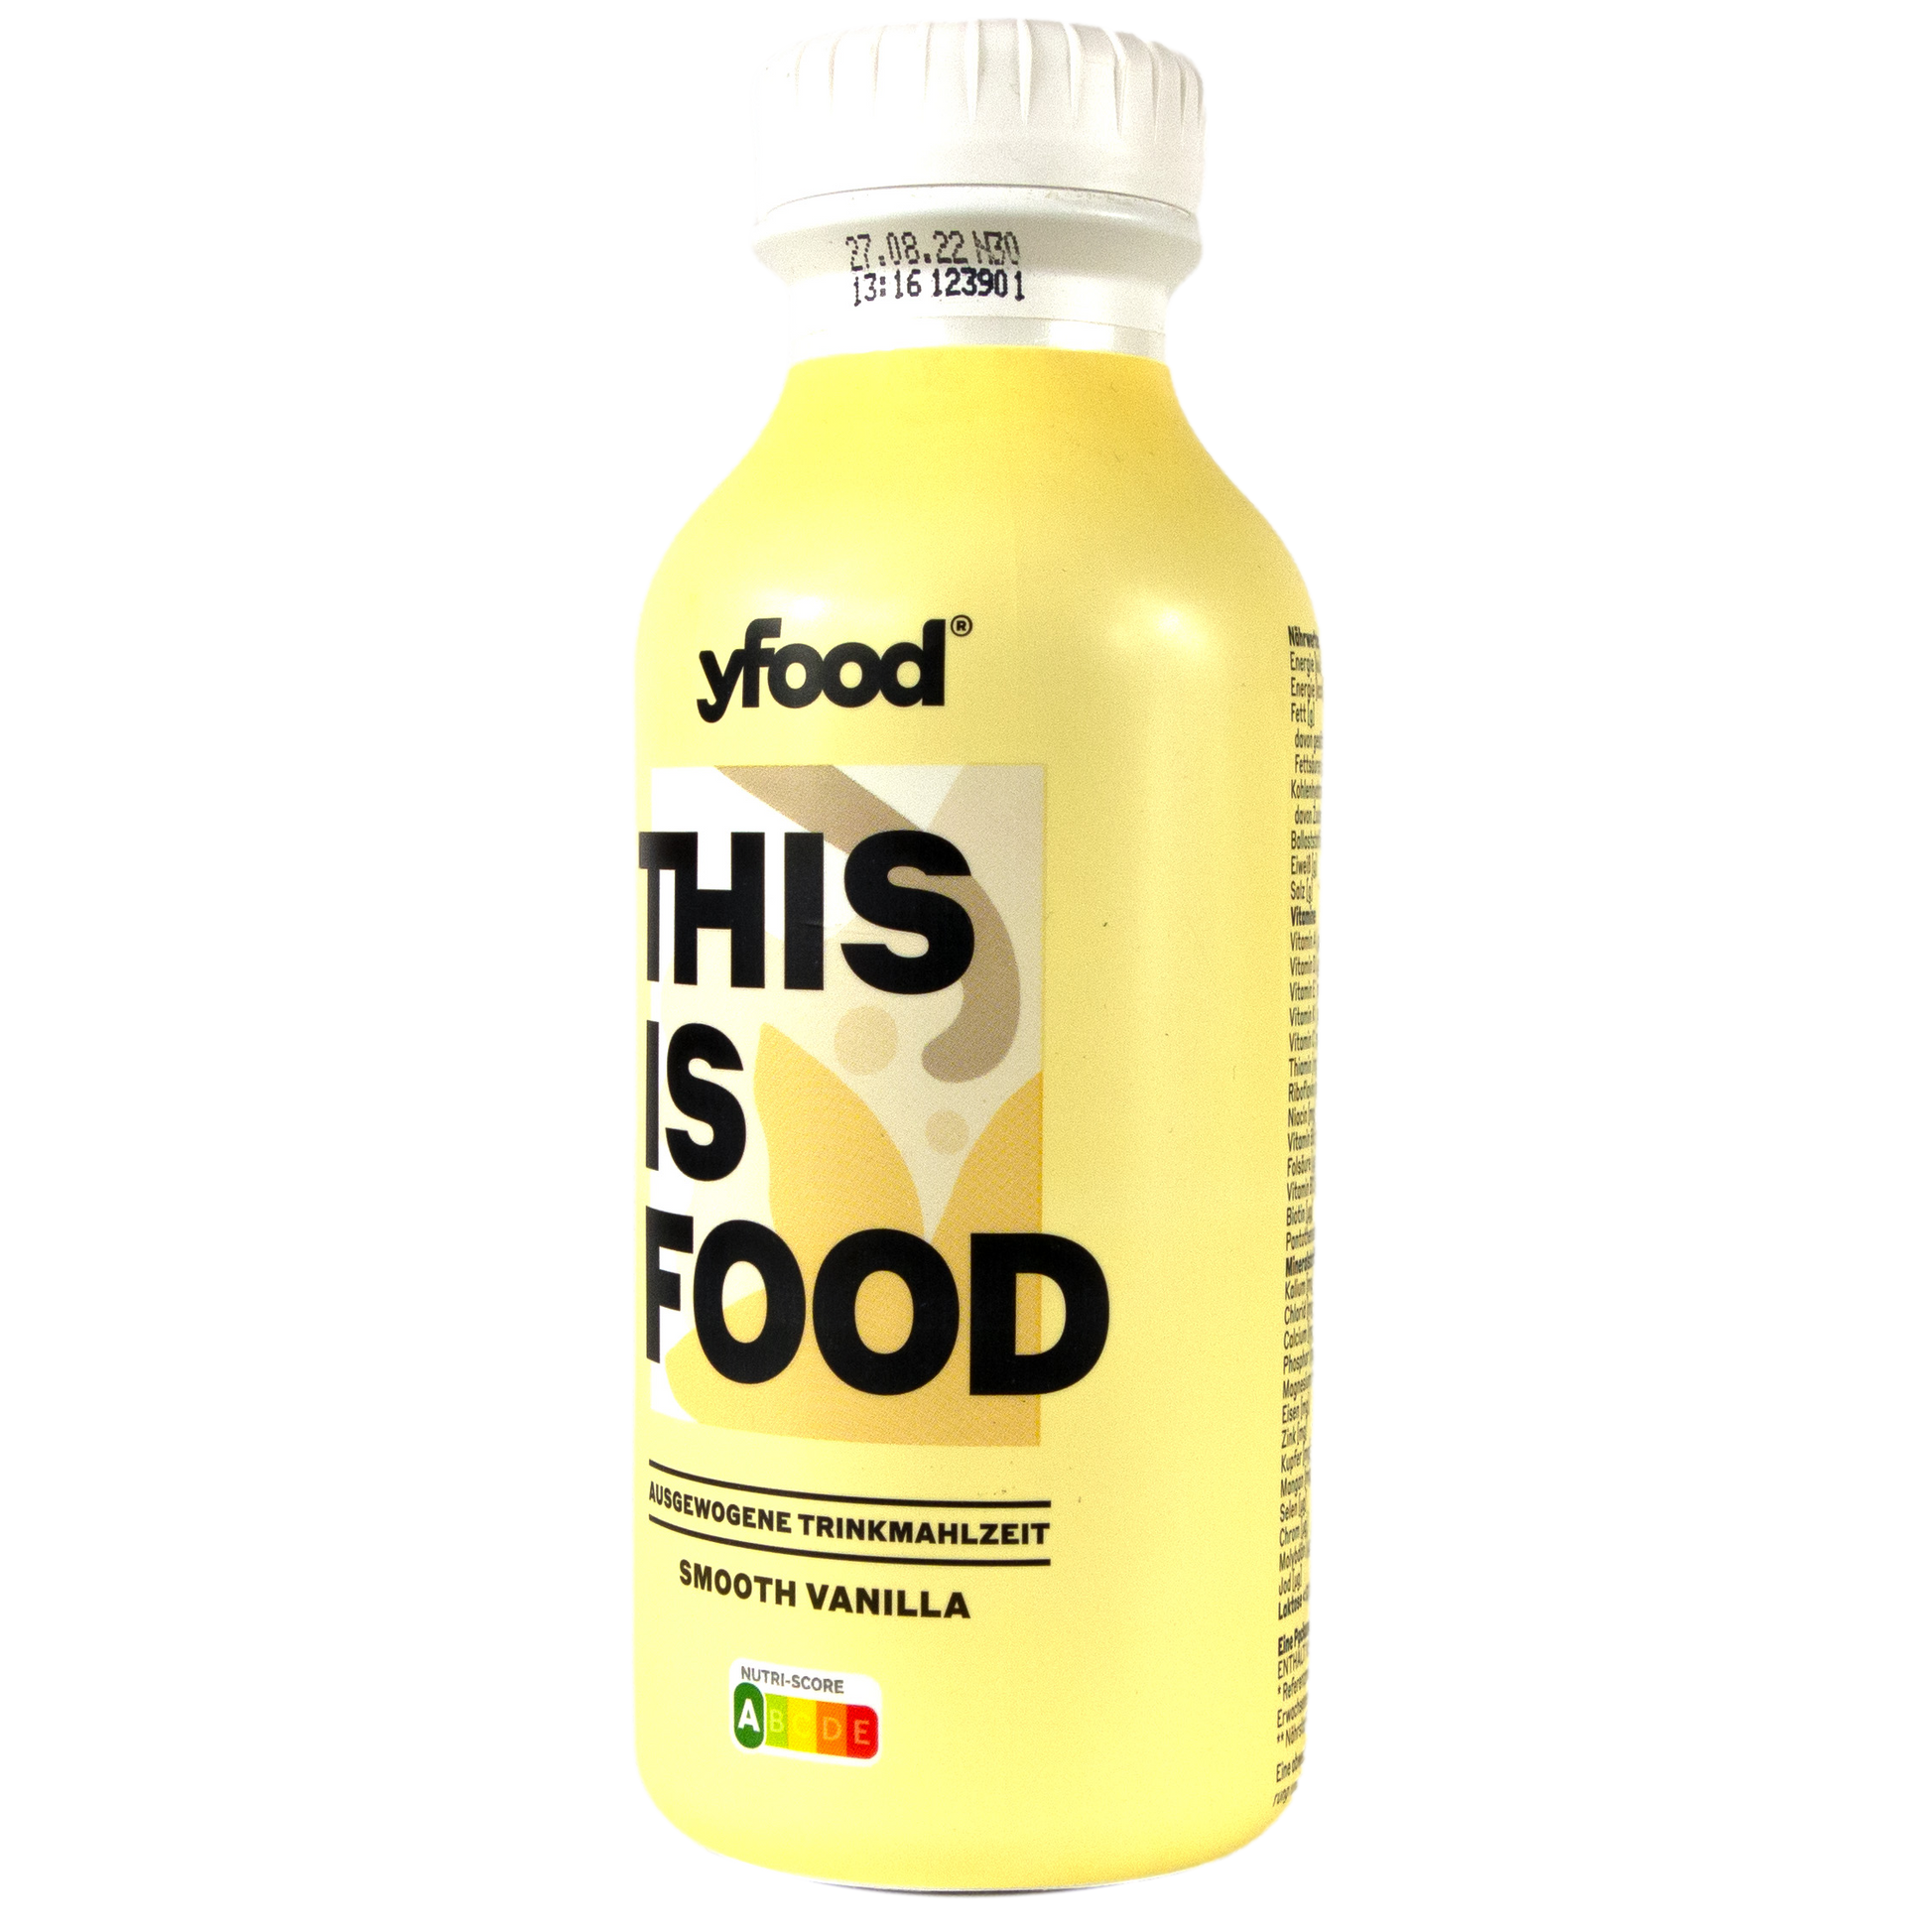 yfood yfood Classic Drinks - Trinkmahlzeit (6 x 500ml) 7429-30